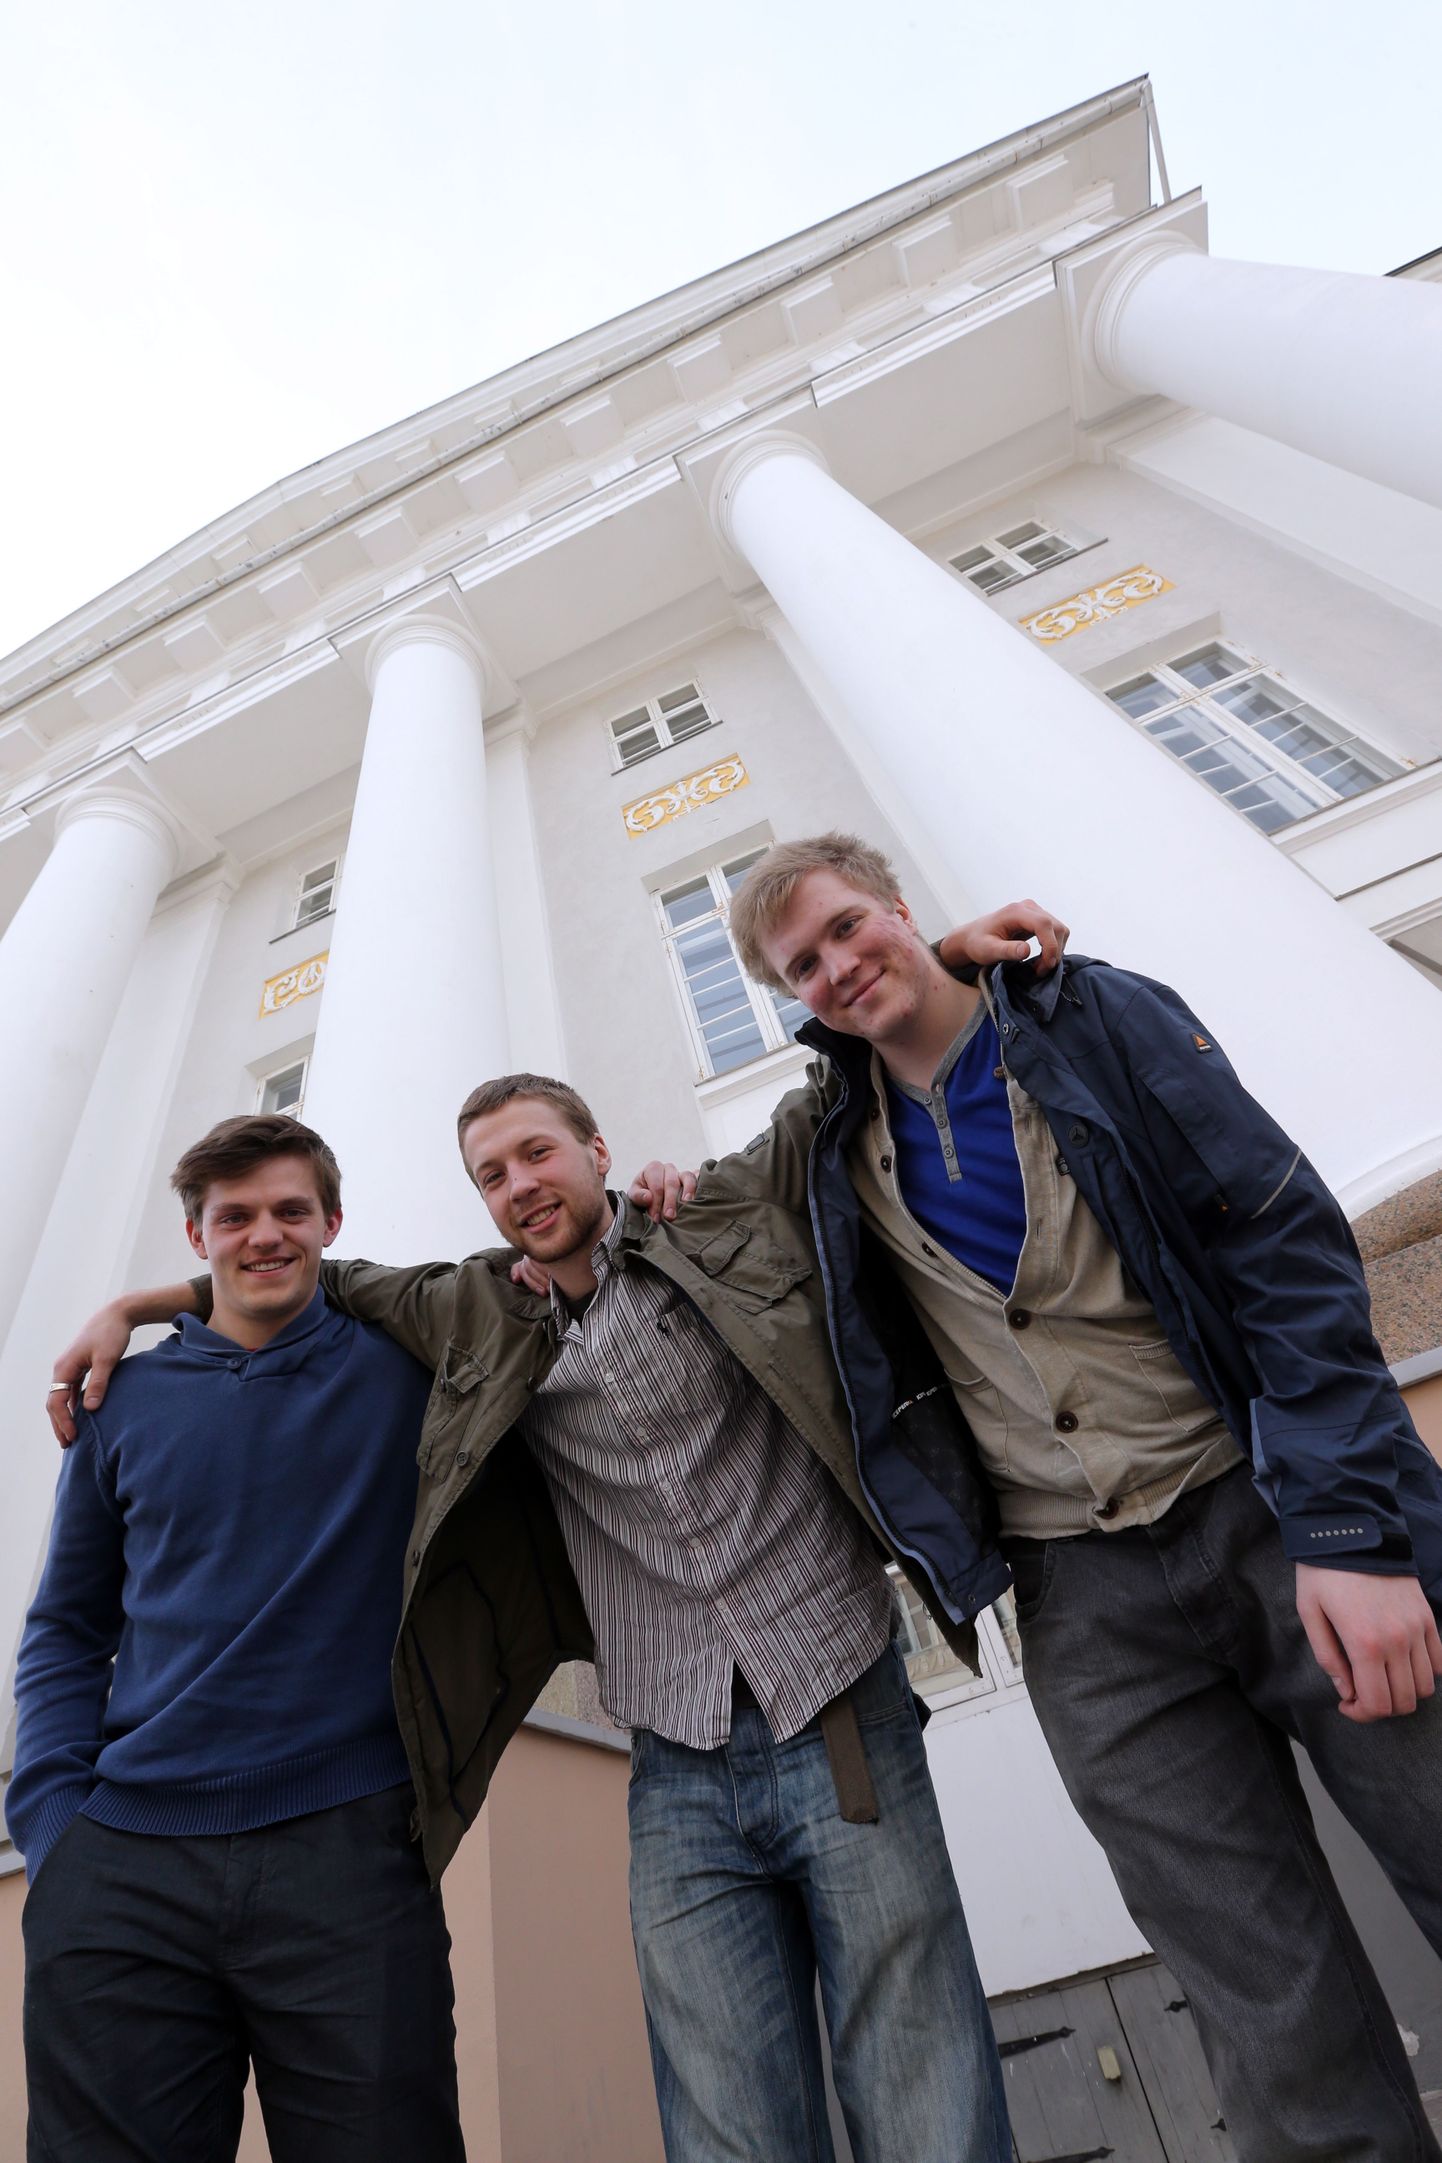 Riias tudengite ärivõistlusel Peak Time osalev Tartu ülikooli meeskond koosseisus Sander Tars (vasakult), Joosep Kivastik ja Siim Kasela. Pildilt puudub Martin Sillasoo.